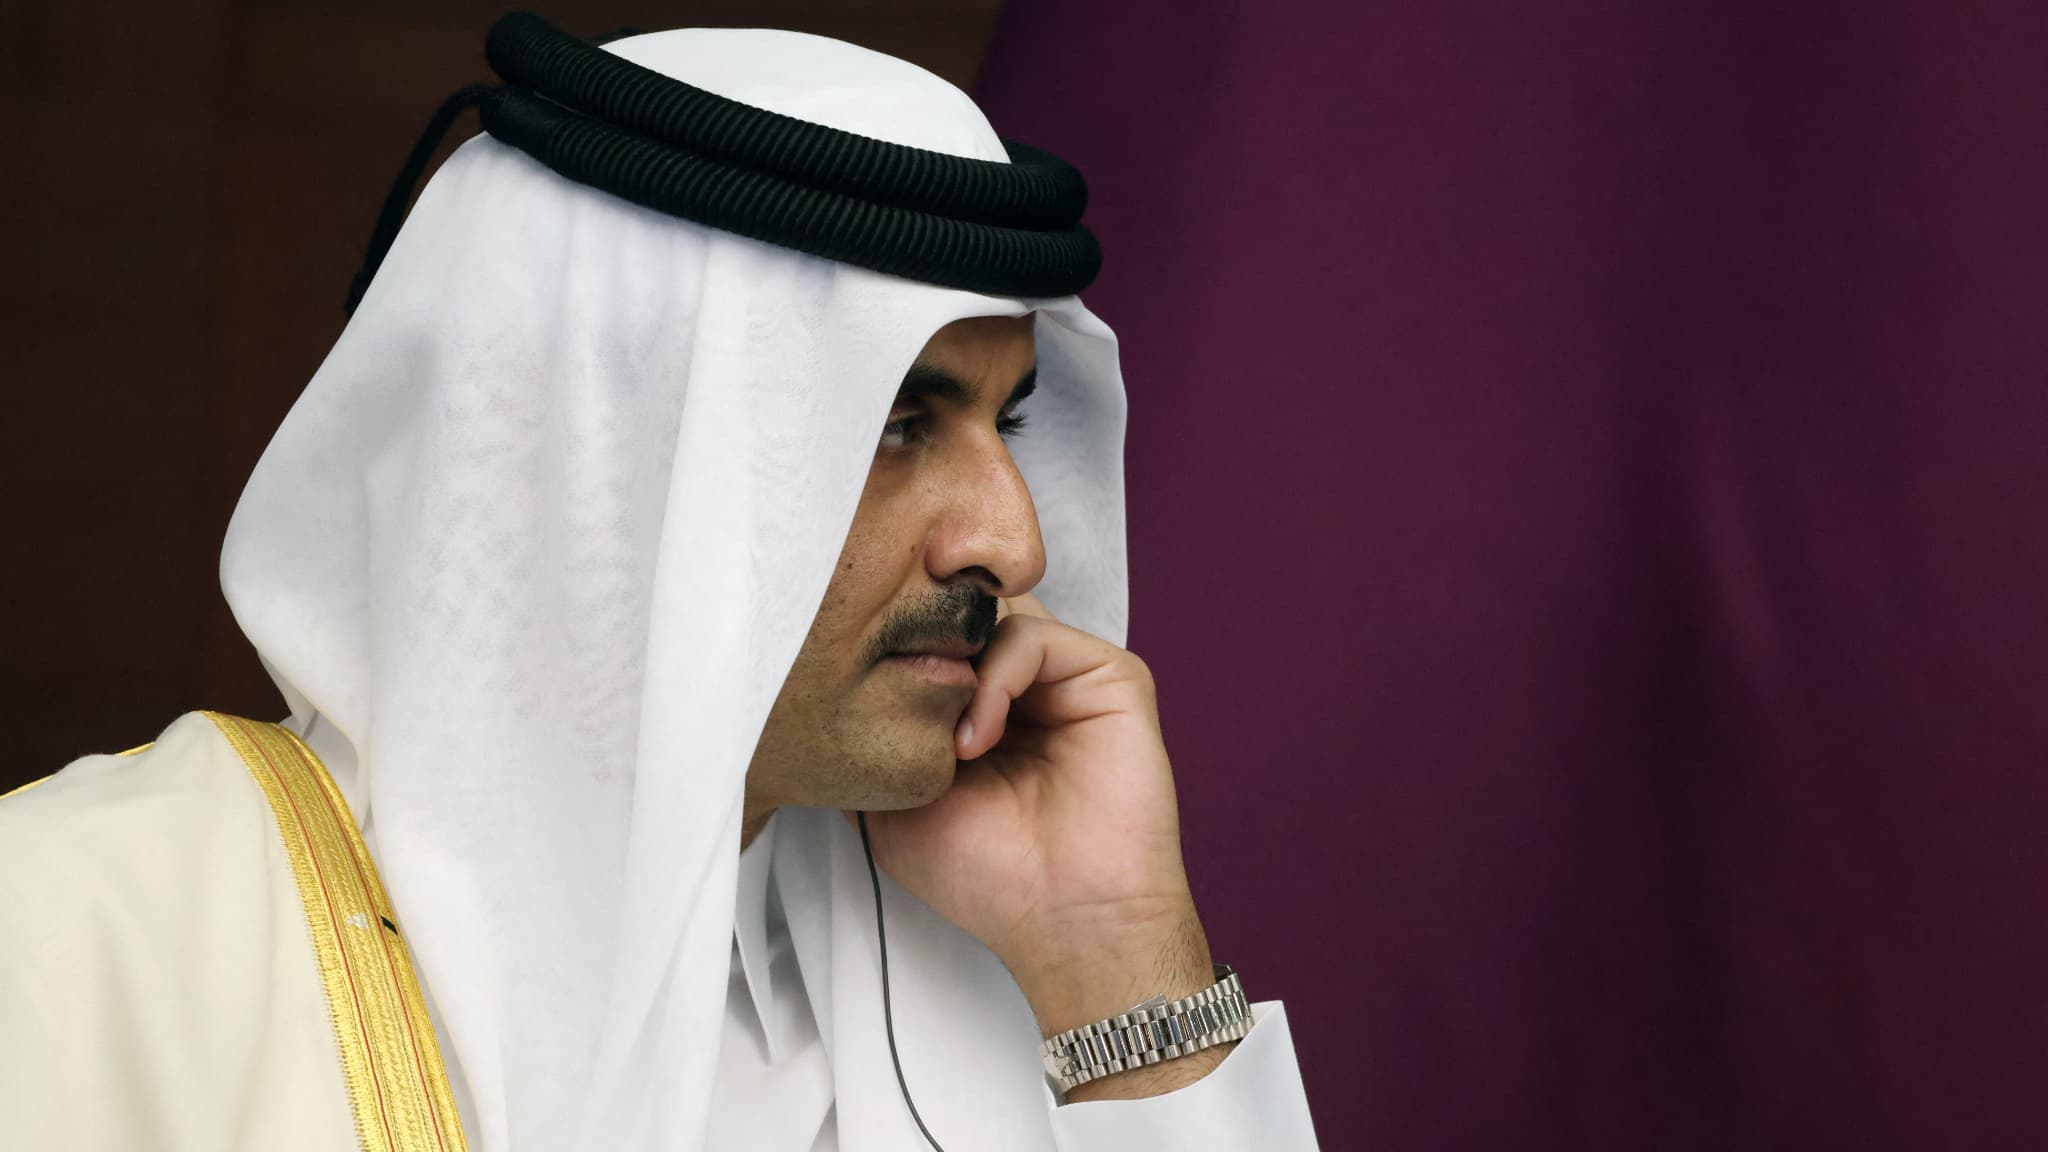 Katar warnt vor „negativen Auswirkungen“ europäischer Maßnahmen